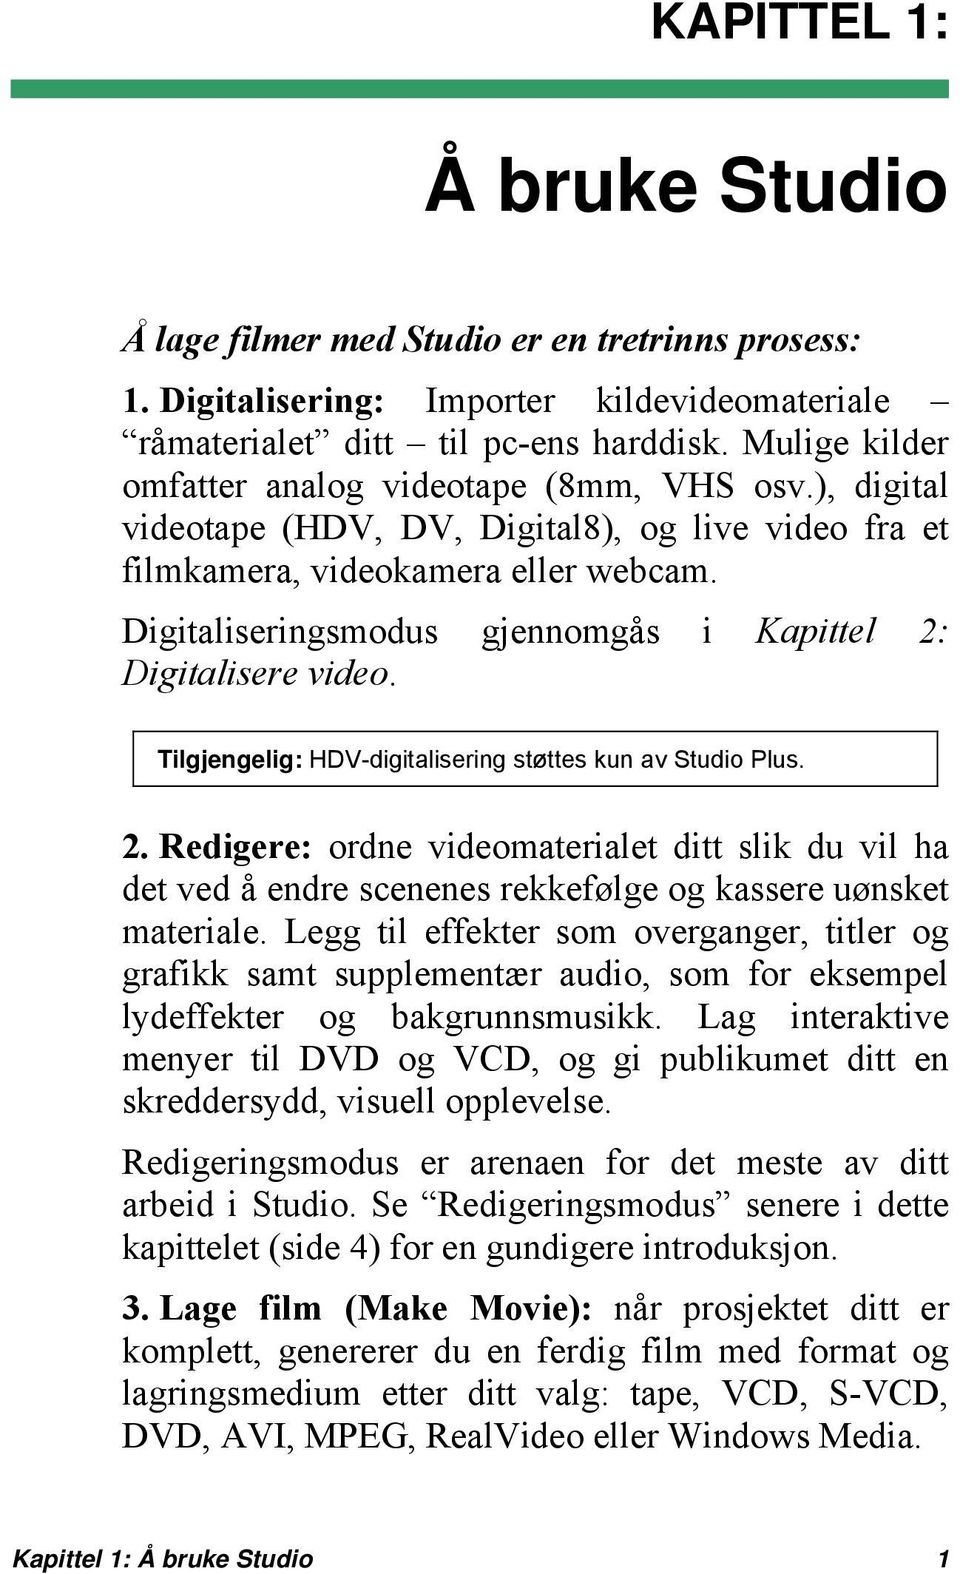 Digitaliseringsmodus gjennomgås i Kapittel 2: Digitalisere video. Tilgjengelig: HDV-digitalisering støttes kun av Studio Plus. 2. Redigere: ordne videomaterialet ditt slik du vil ha det ved å endre scenenes rekkefølge og kassere uønsket materiale.